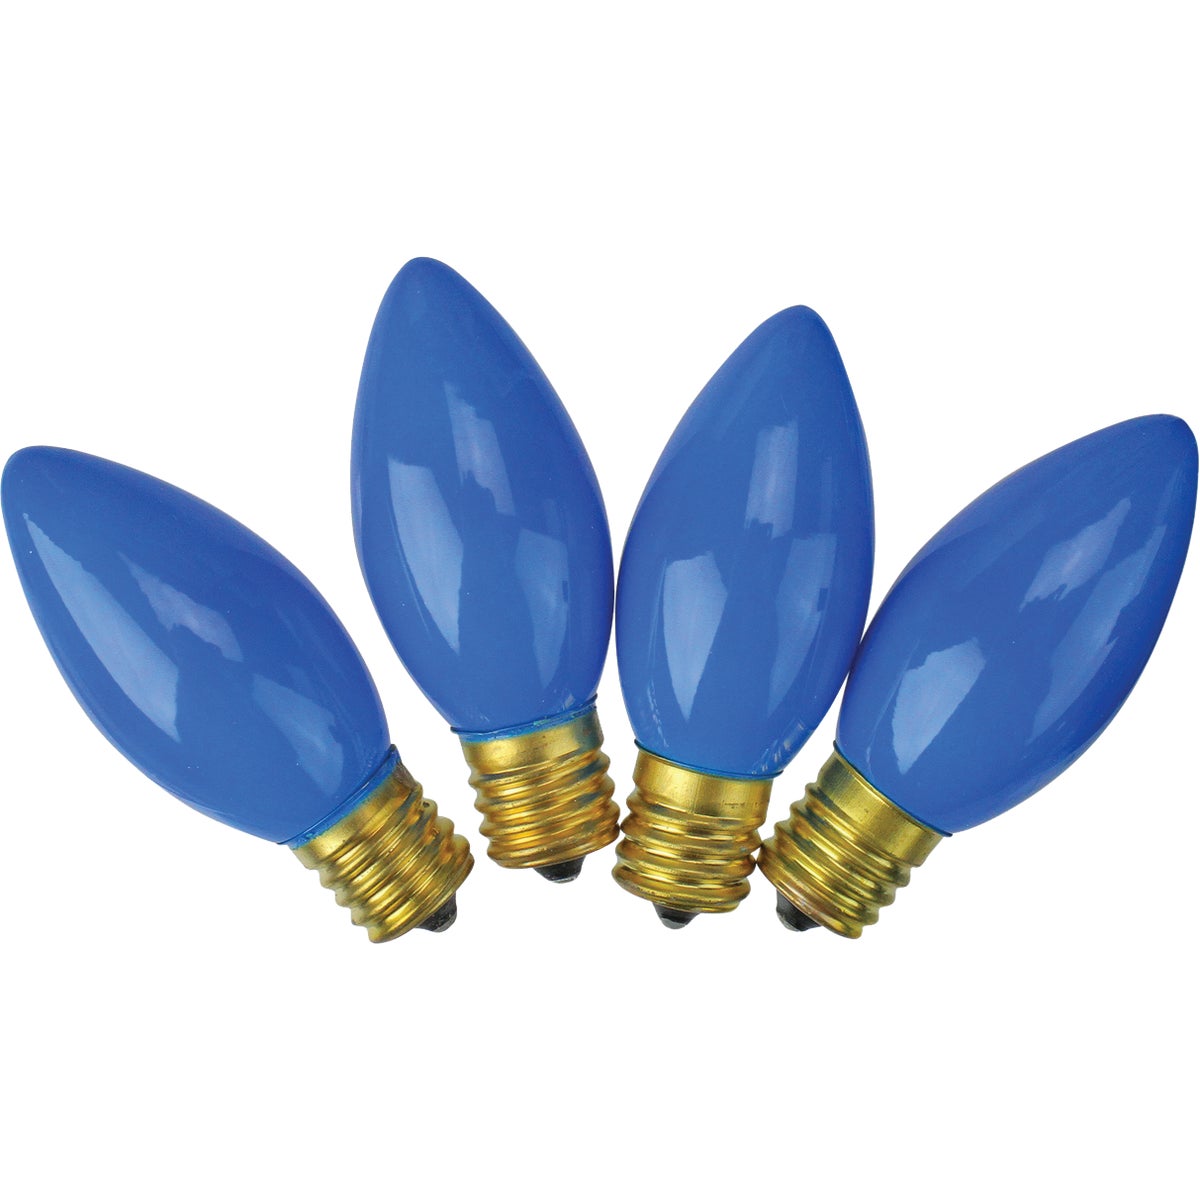 J Hofert C9 Blue Ceramic 125V Replacement Light Bulb (4-Pack)